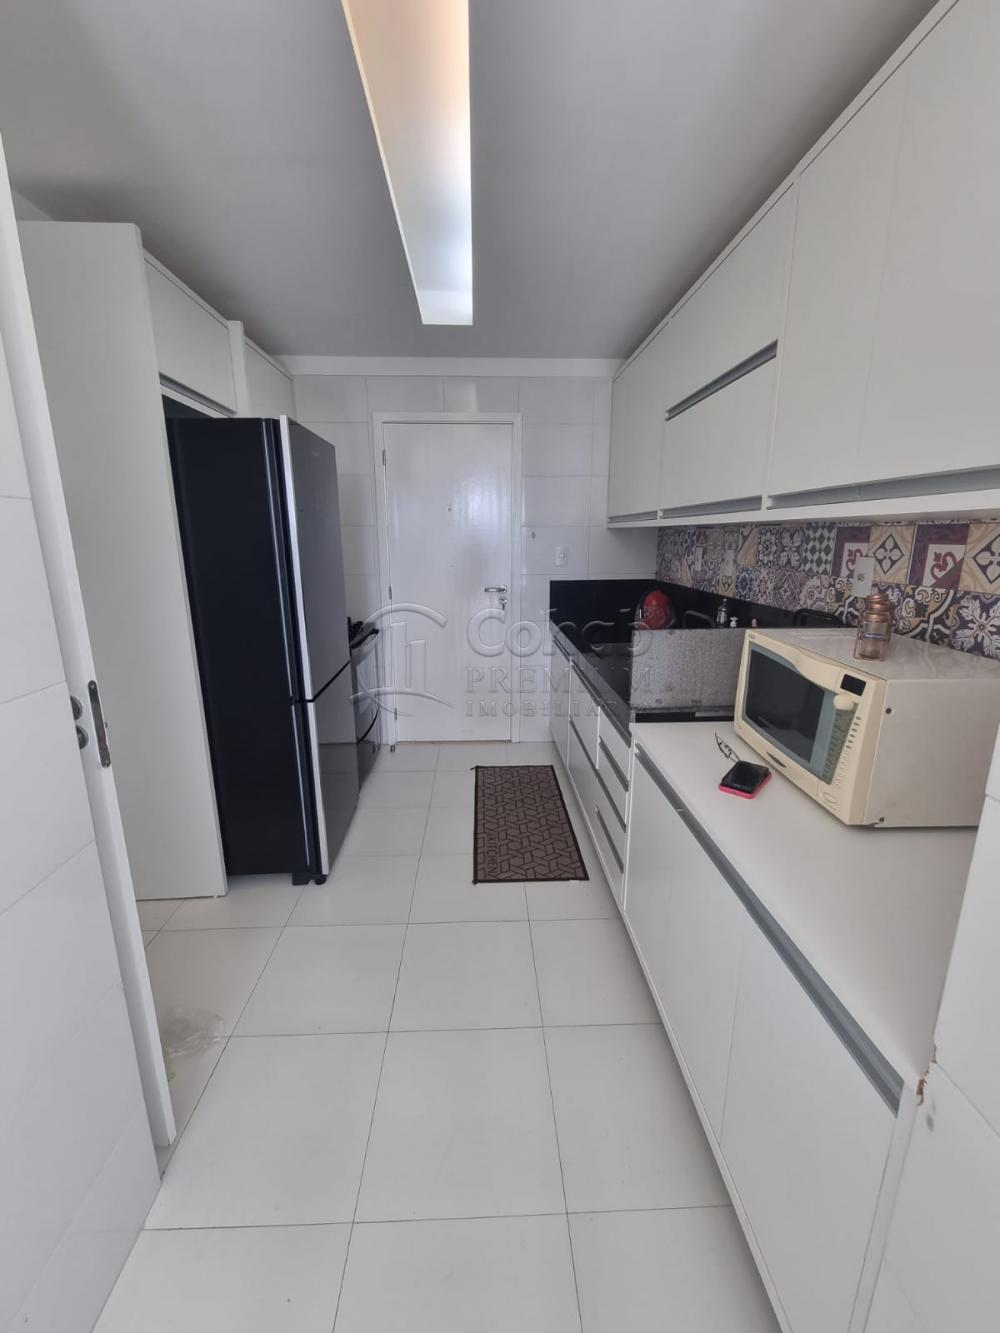 Comprar Apartamento / Padrão em Aracaju R$ 770.000,00 - Foto 18